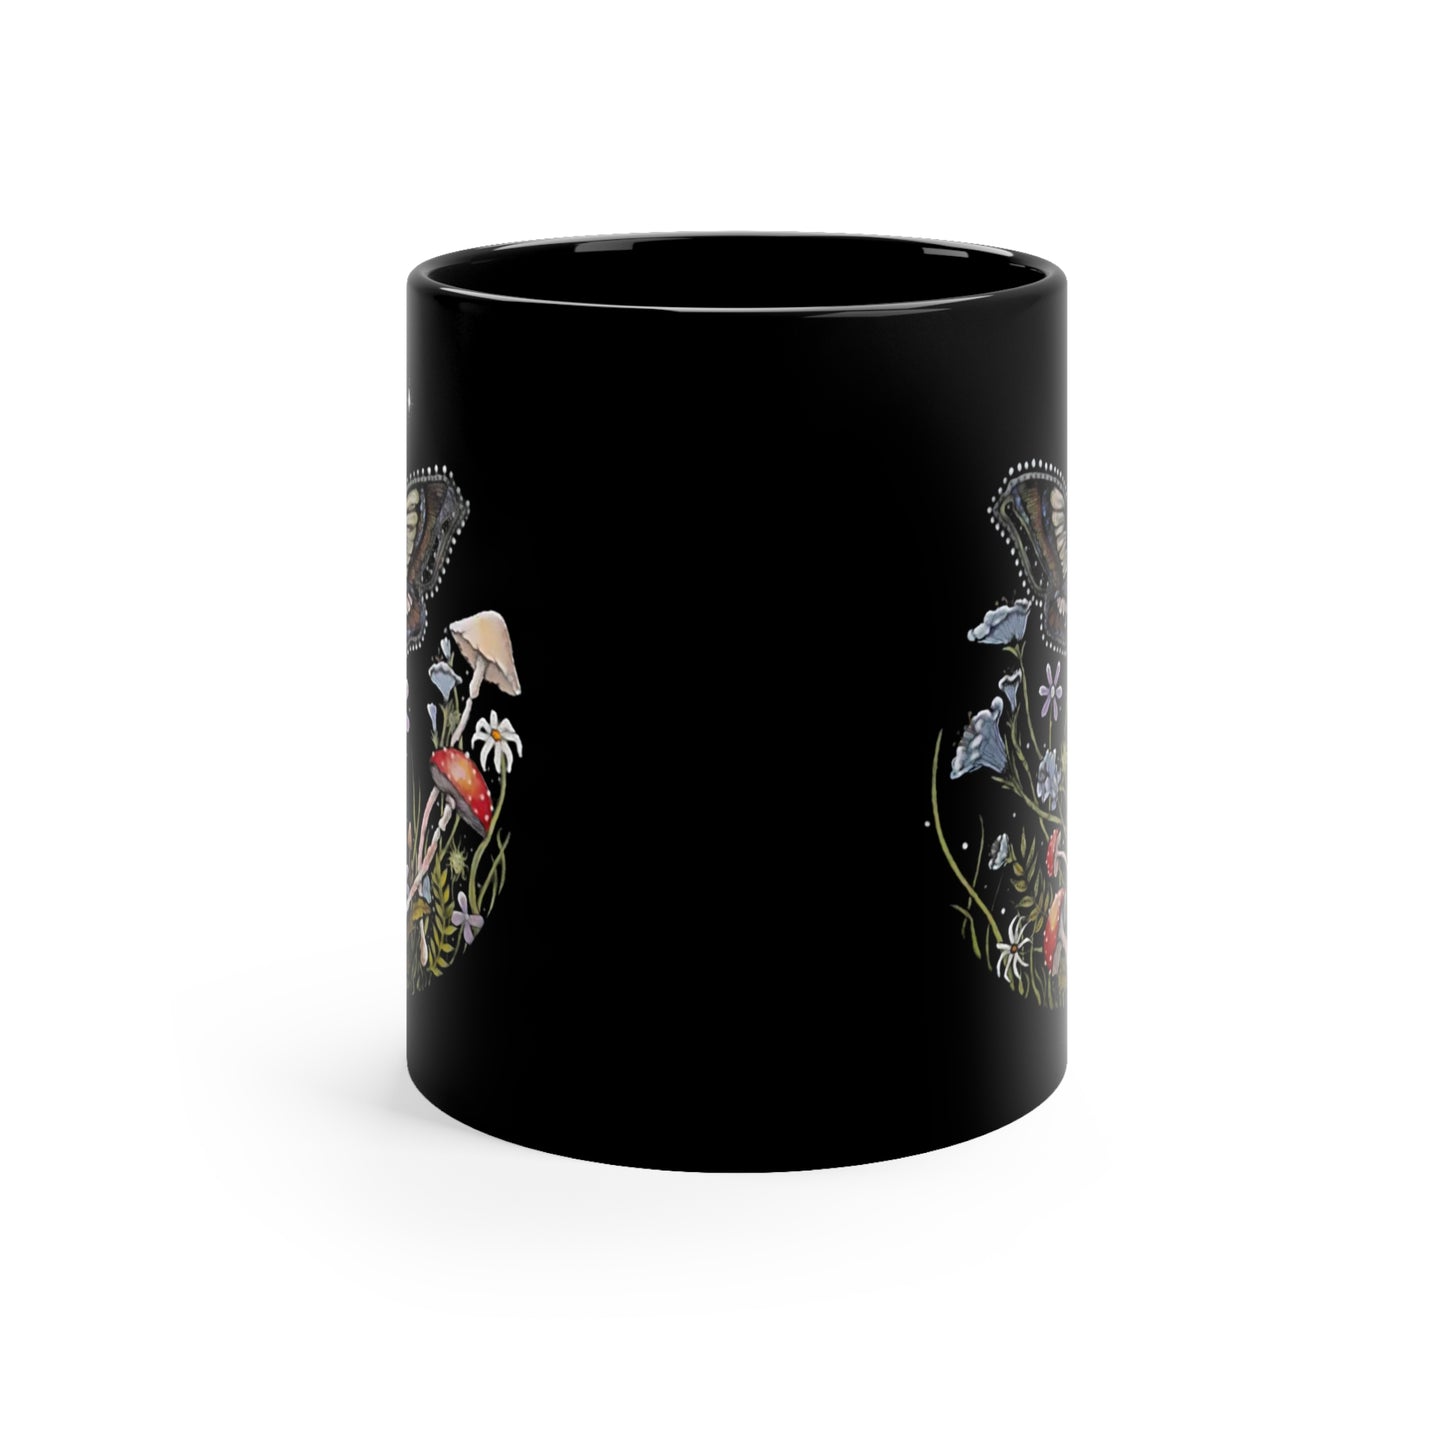 Moth, Mushroom, and Floral ARt by Raven Moonla Black Coffee Mug, 11oz